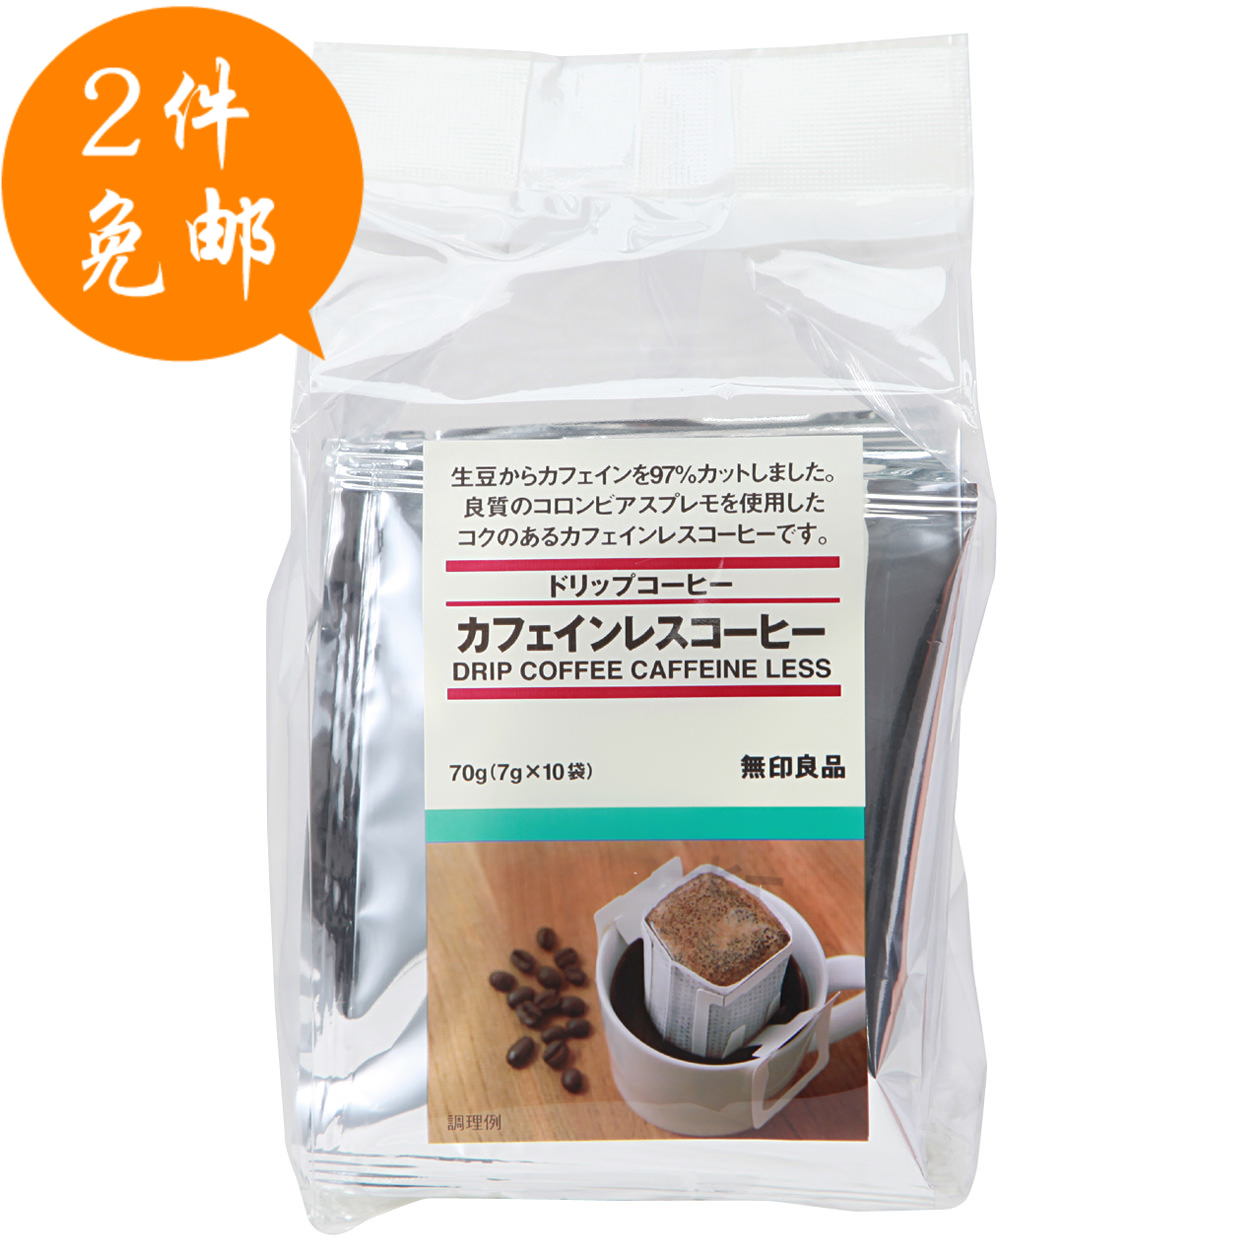 两份包邮 日本进口 muji无印良品 低因滴漏挂耳式黑咖啡粉10袋装